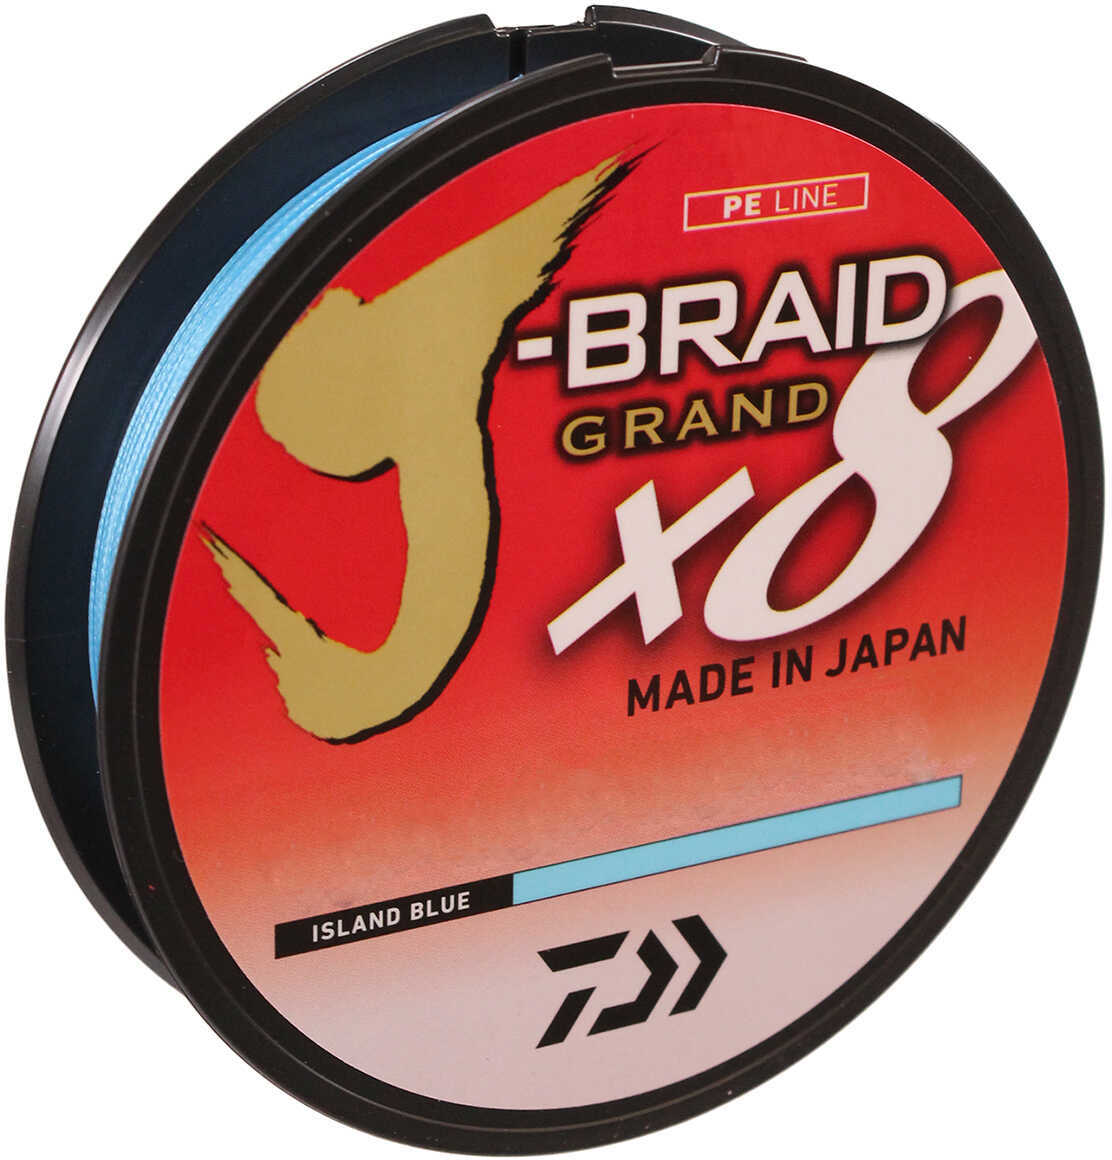 J-BRAID GRAND X8 40lb 150yd ISLAND BLUE Model: JBGD8U40-150IB